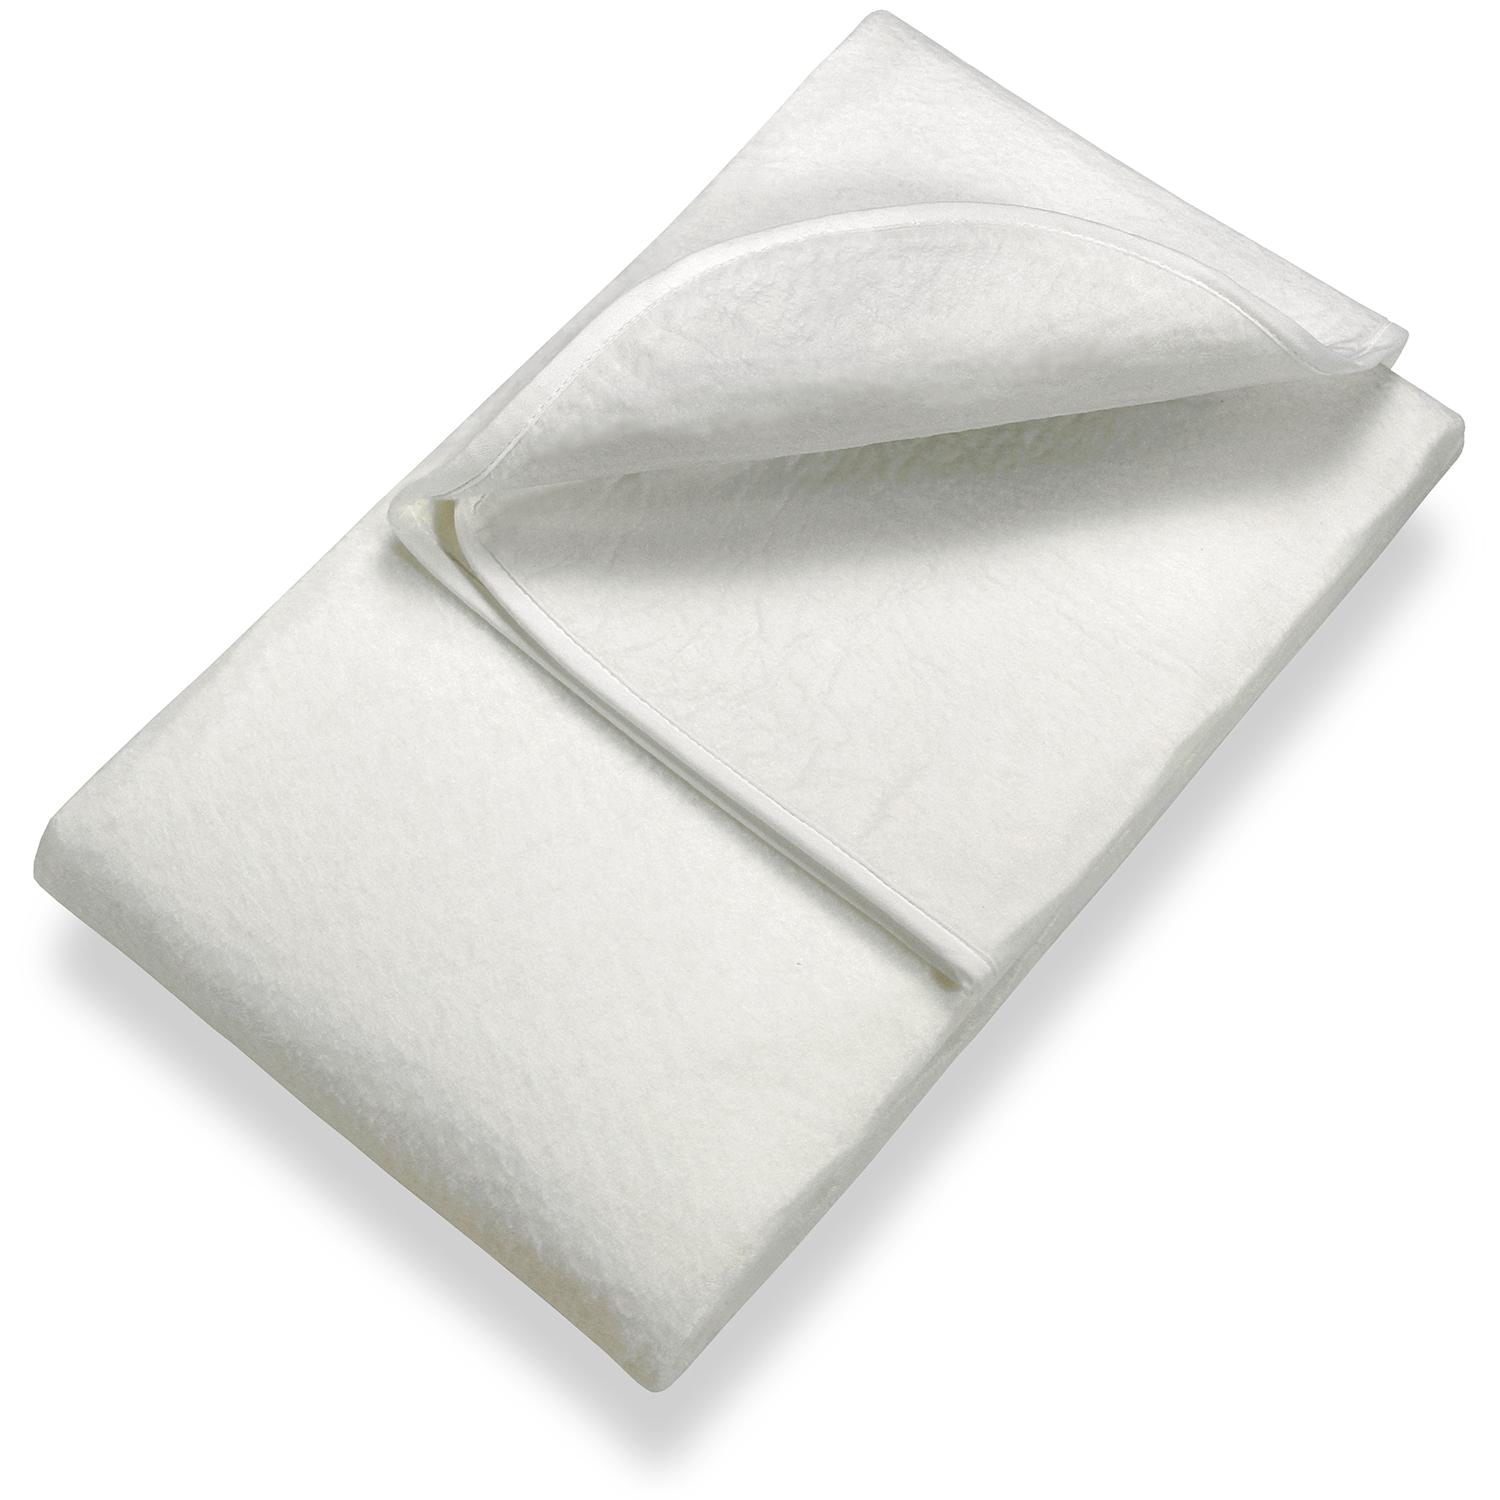 Sleezzz Basic iğneli keçe yatak bazası 160 x 200 cm, çıtalı çerçeve üzerine yerleştirmek için yatak koruyucu, beyaz